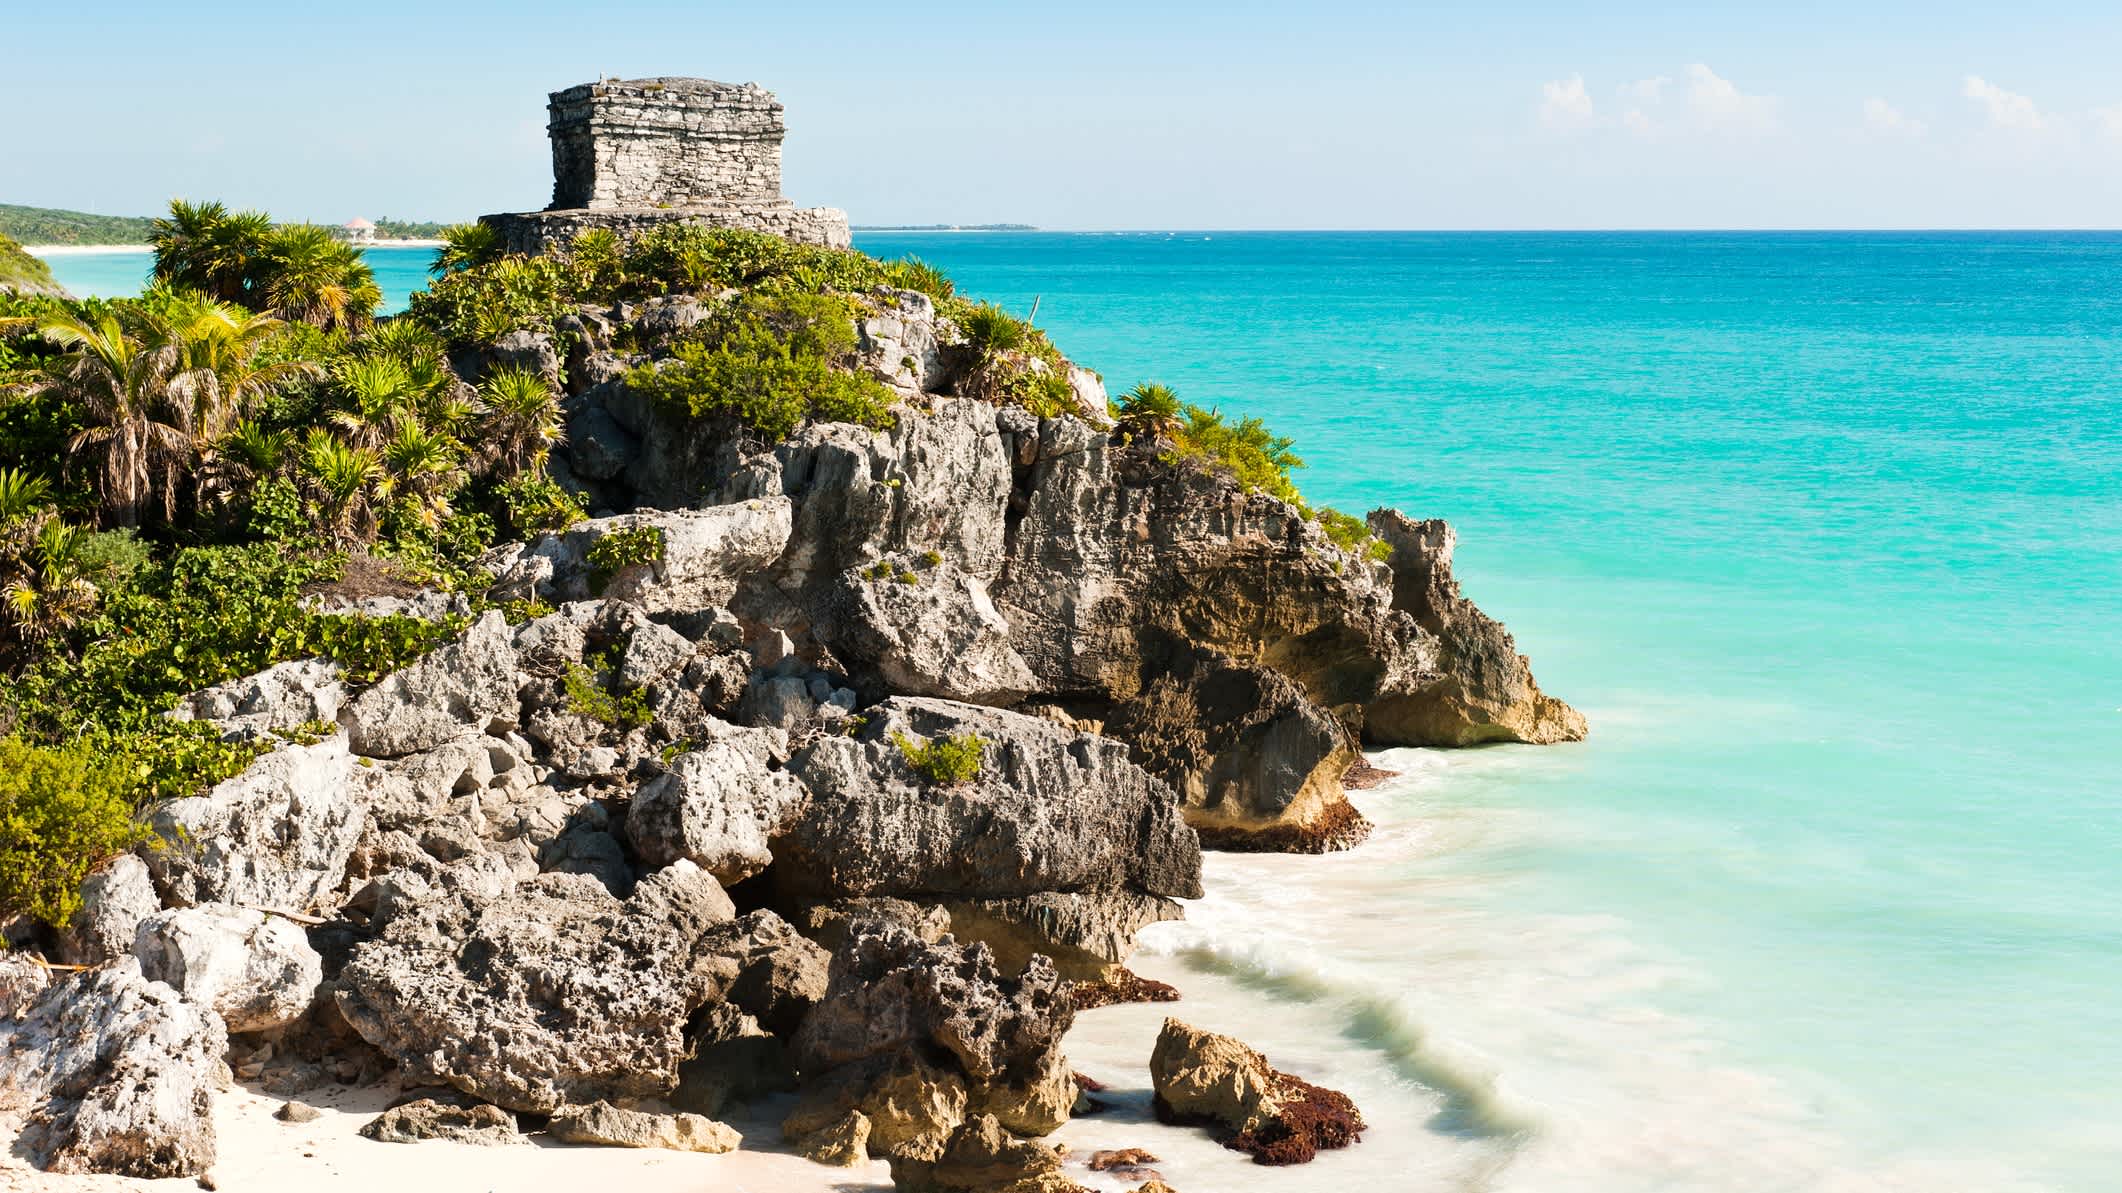 Ruinen der alten Maya-Stadt Tulum in Mexiko, aufgenommen an einem warmen Sommertag mit klarem blauen Himmel und t ürkisfarbenem Karibikmeer.